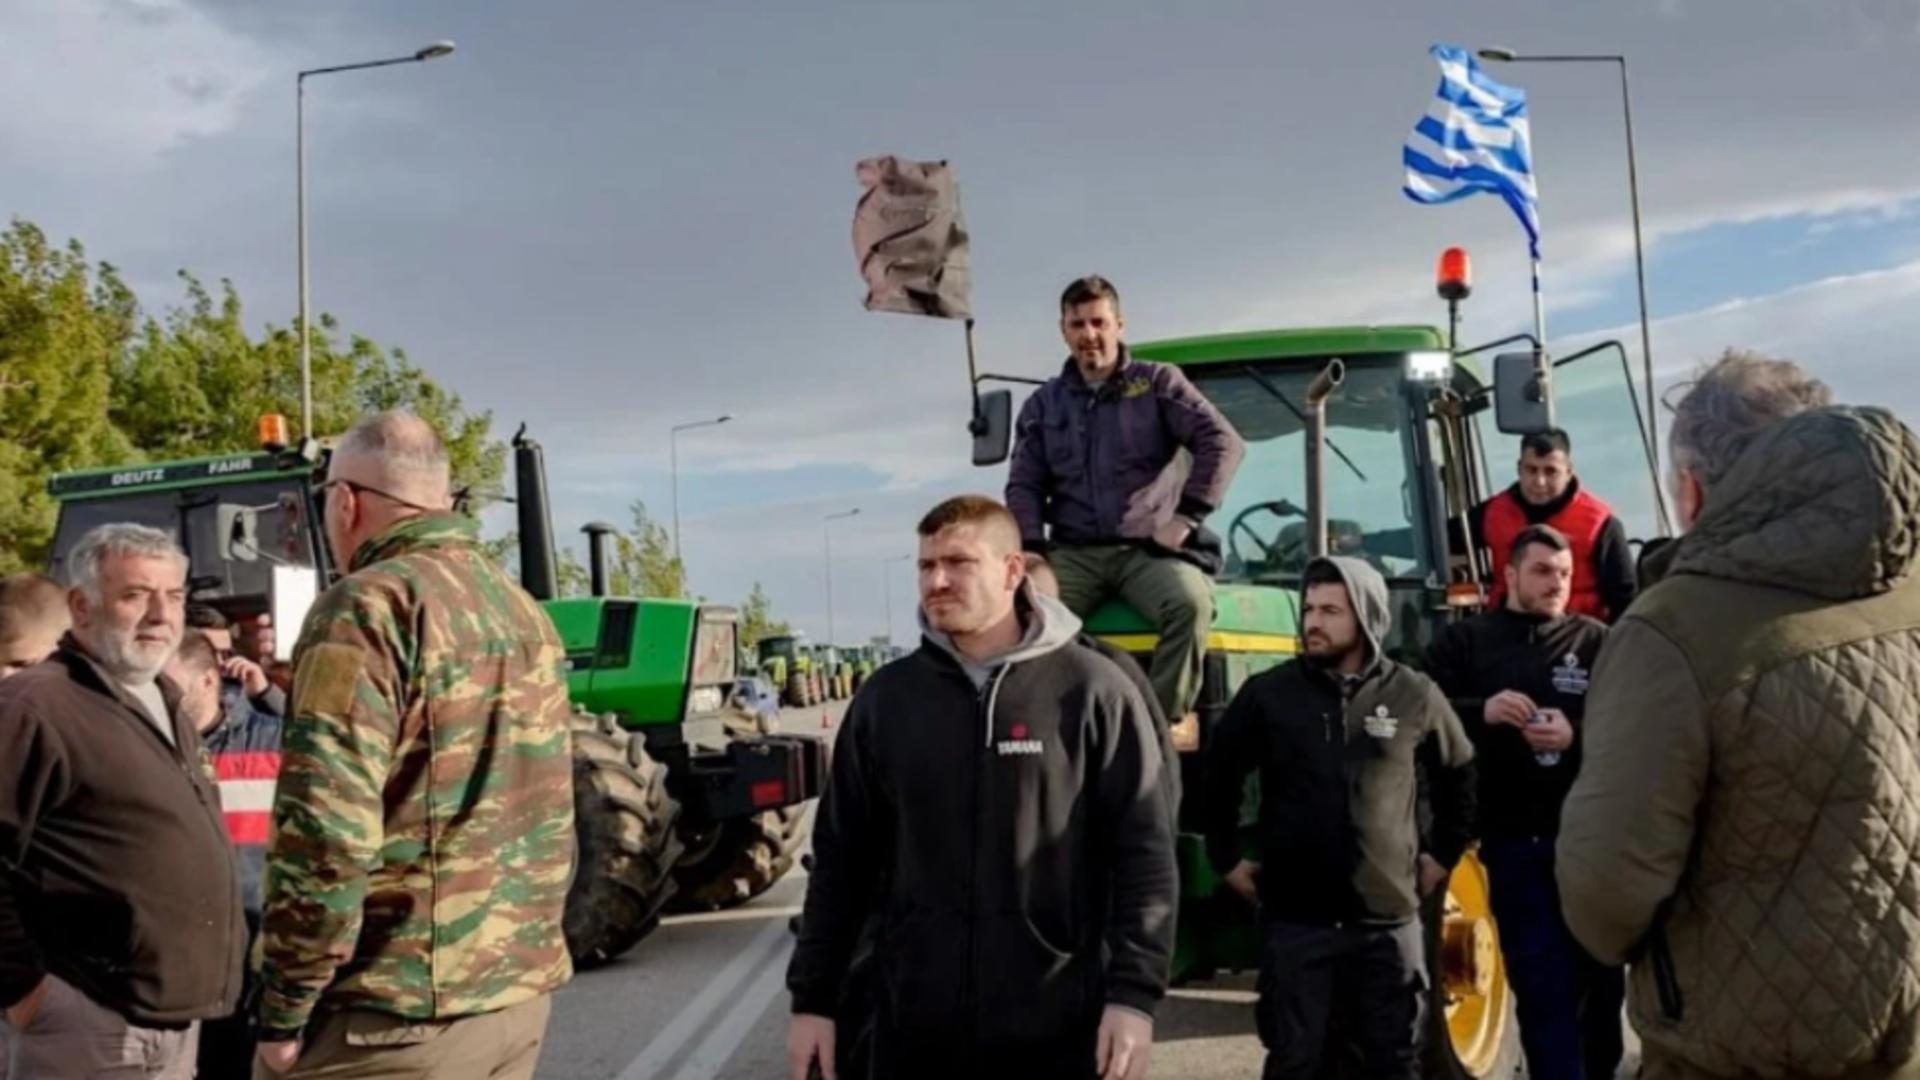 Restricții de circulație în Atena în contextul protestelor fermierilor. MAE a emis o atenționare de călătorie